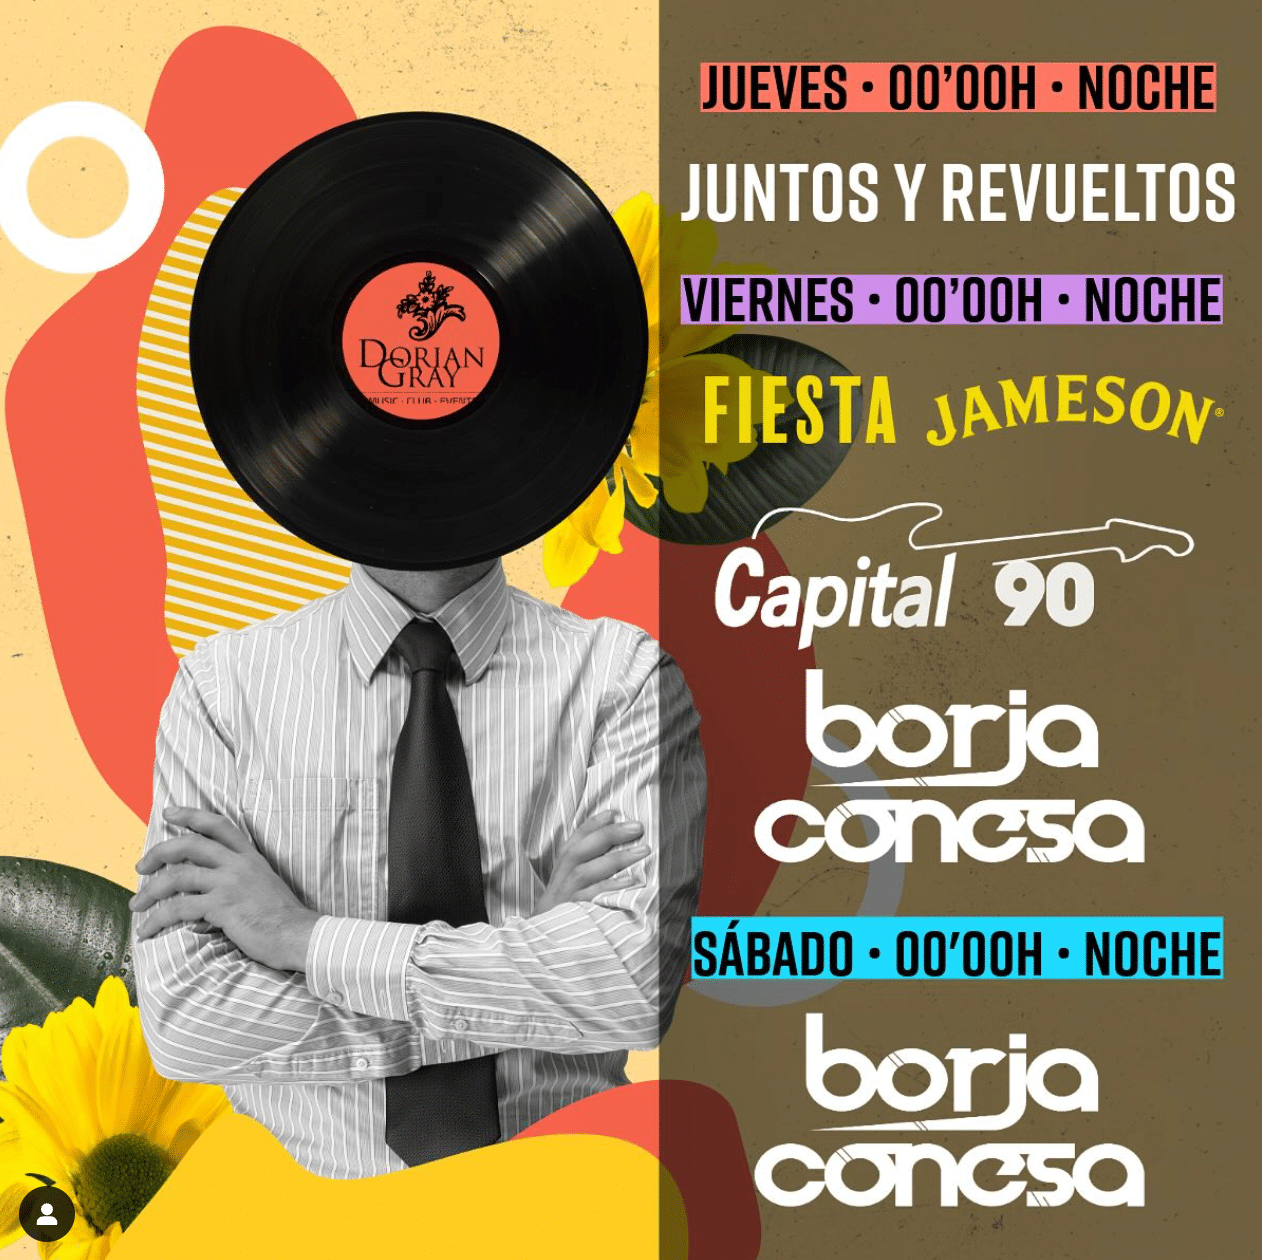 Evento Juntos y Revueltos, Fiesta Jameson.